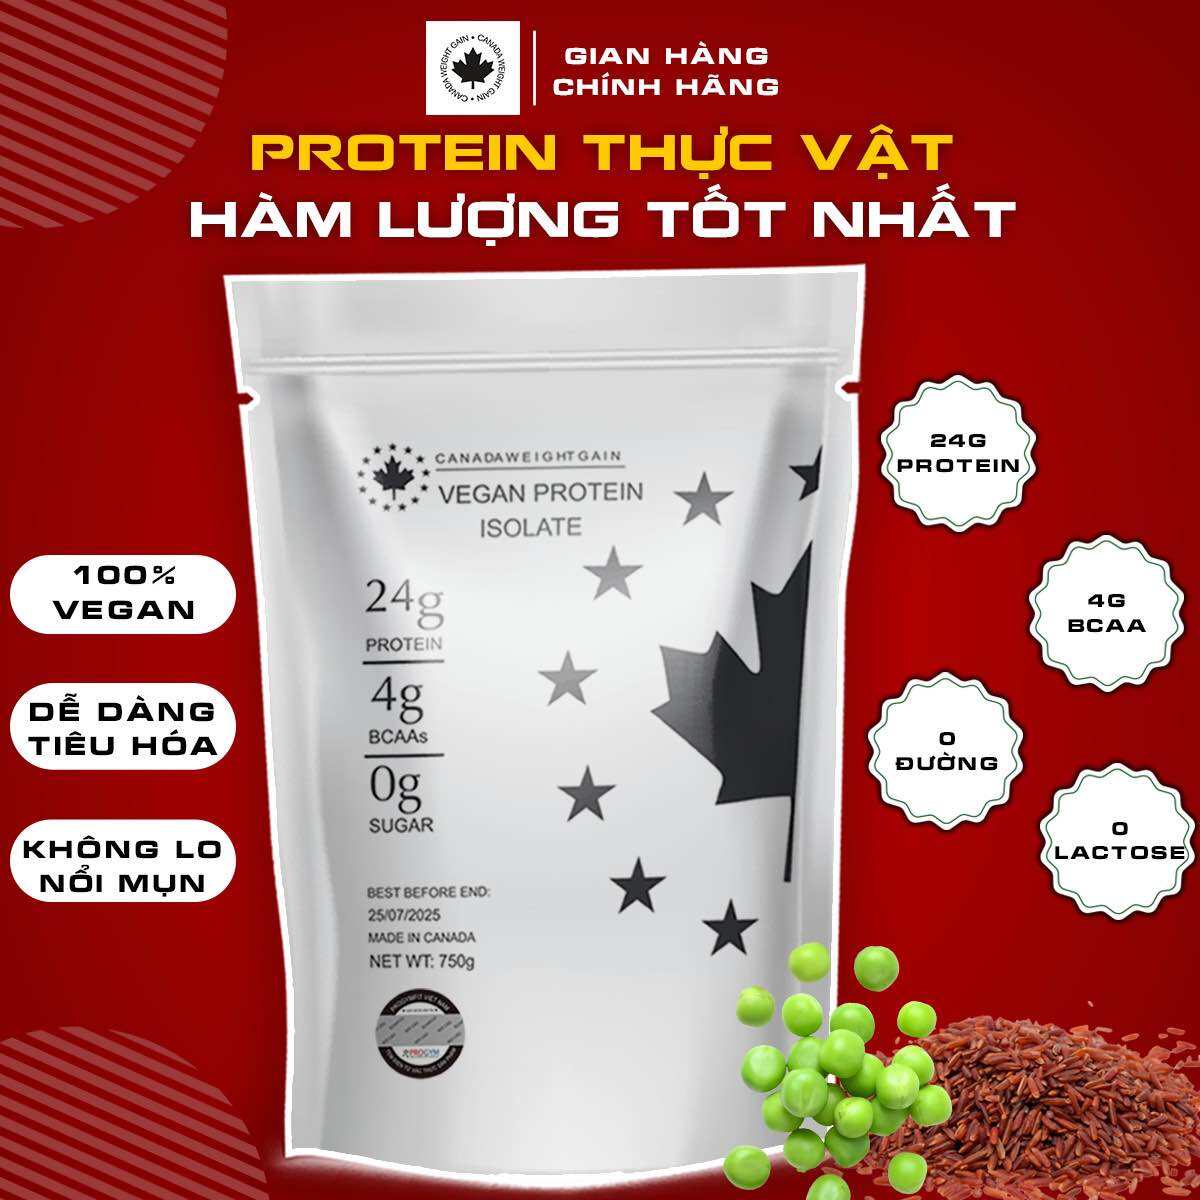 Vegan Protein Isolate - Túi 750g - Protein Thực Vật Cô Lập-  Chính hãng Canada WeightGain